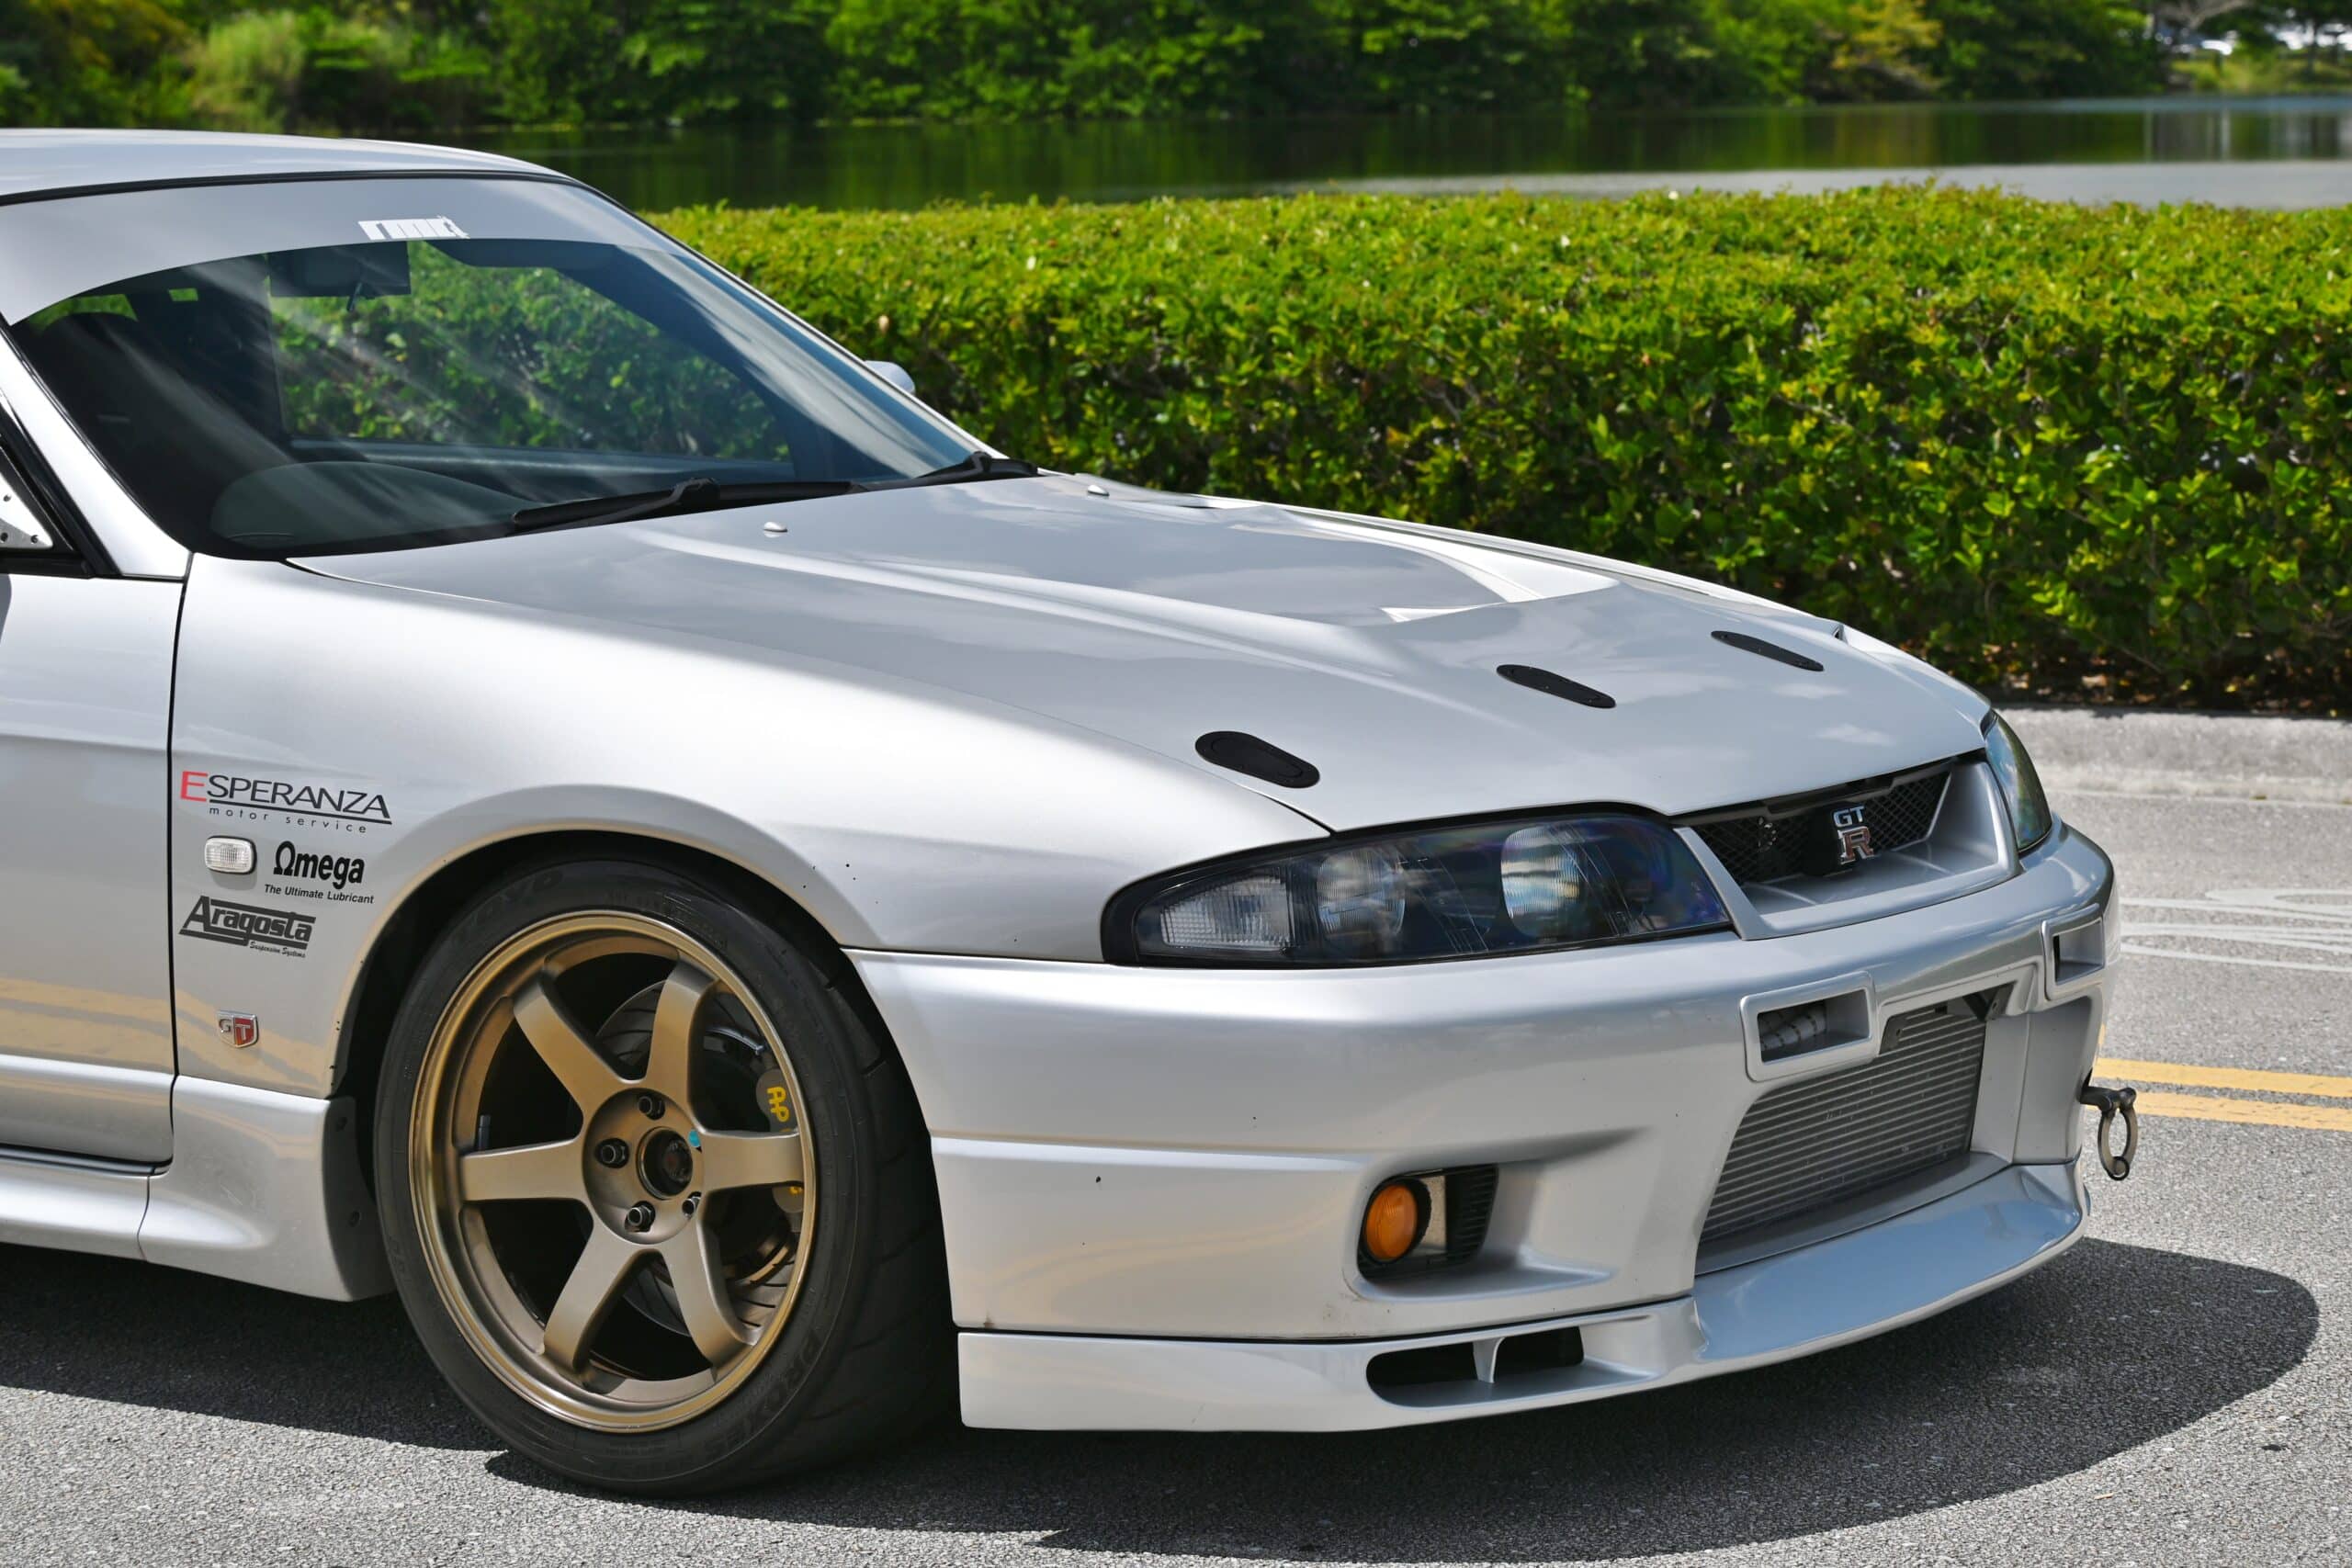 1996 Nissan GT-R R33 GTR V-SPEC HKS 2.8L Stroker N1 Block / 730 Horsepower / Haltech / AP Racing Brakes /